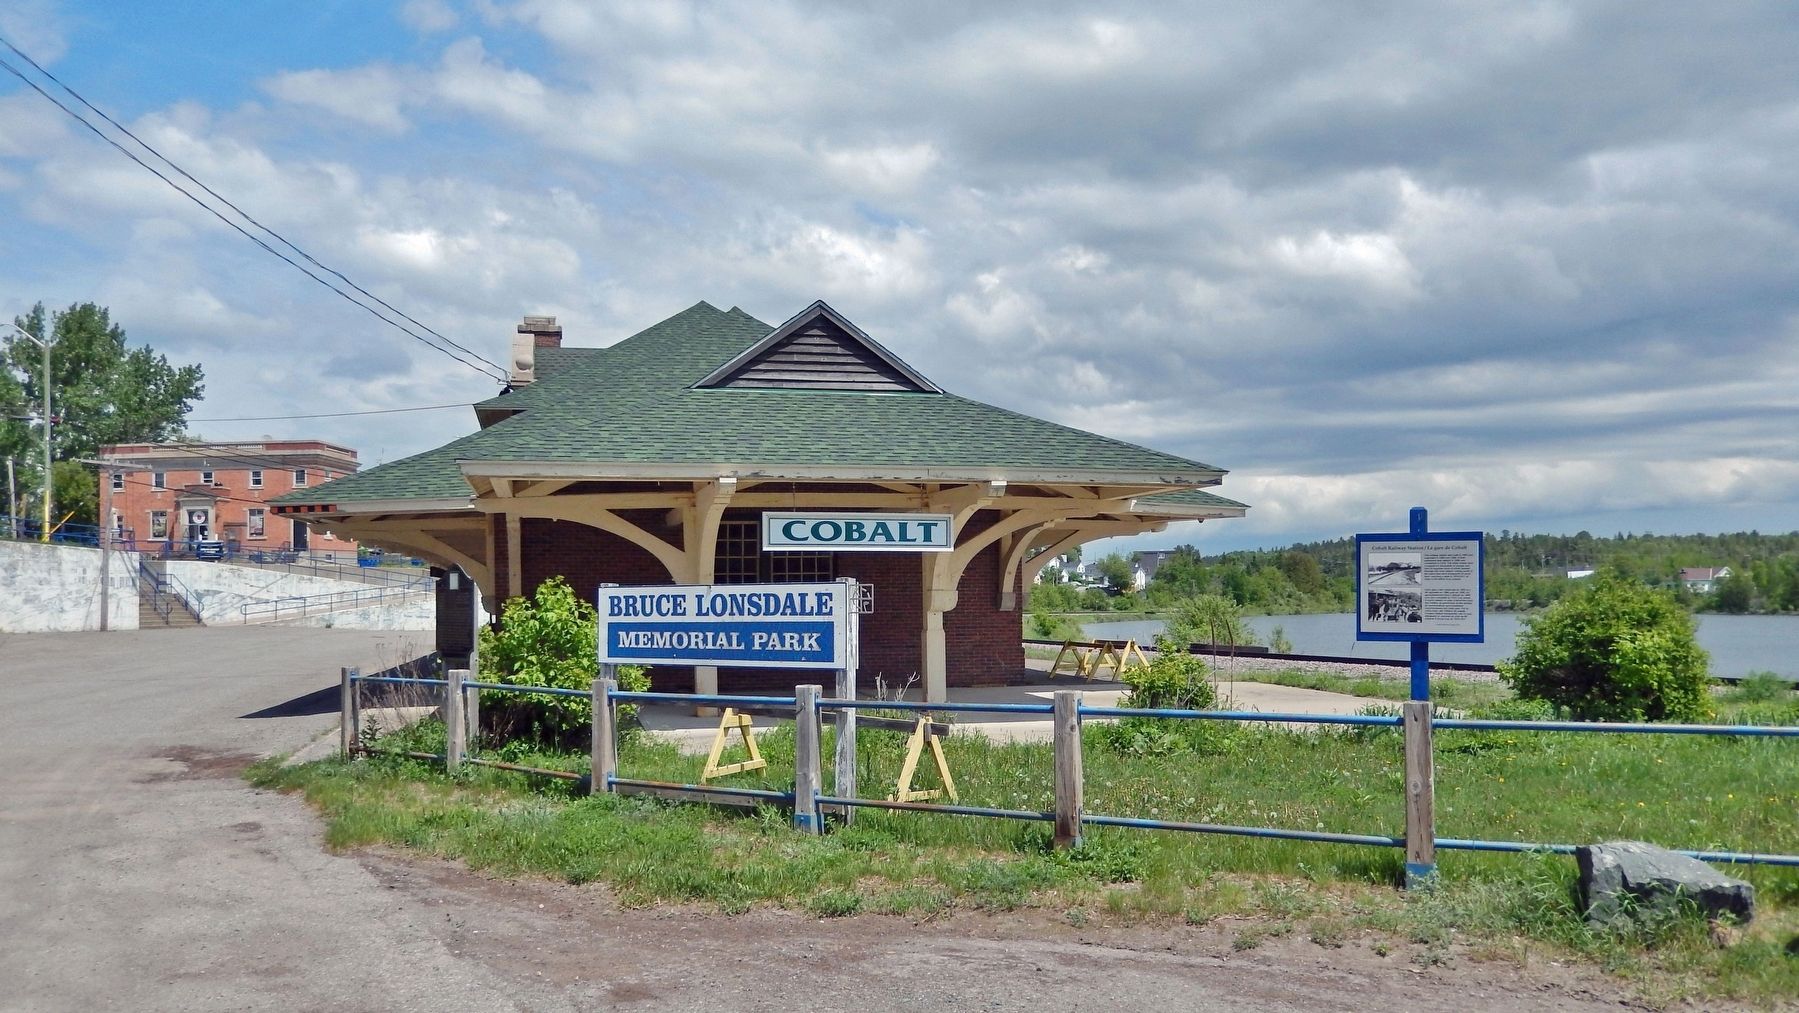 Cobalt Railway Station / La gare de Cobalt Marker image. Click for full size.